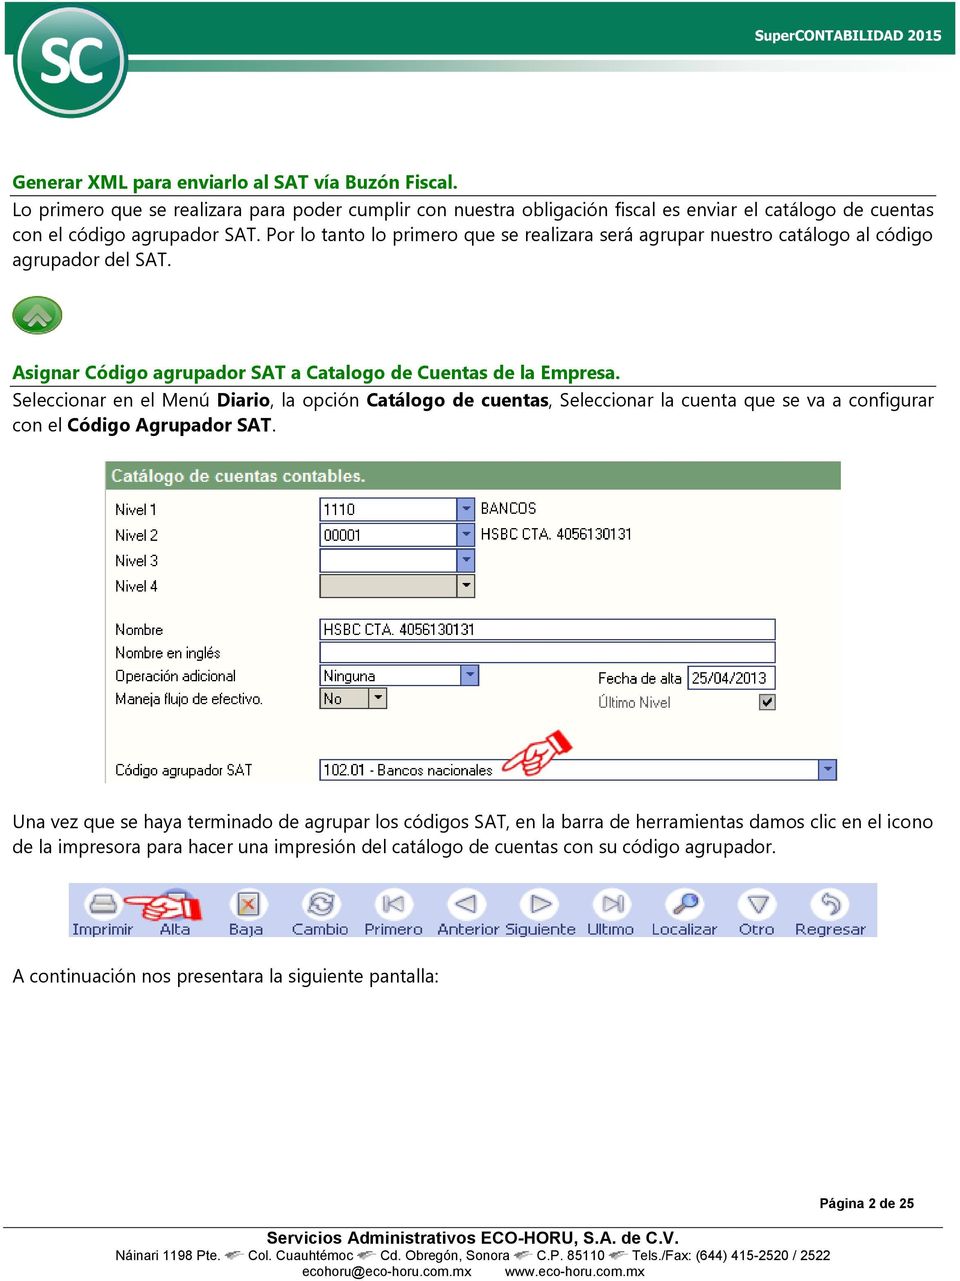 Seleccionar en el Menú Diario, la opción Catálogo de cuentas, Seleccionar la cuenta que se va a configurar con el Código Agrupador SAT.